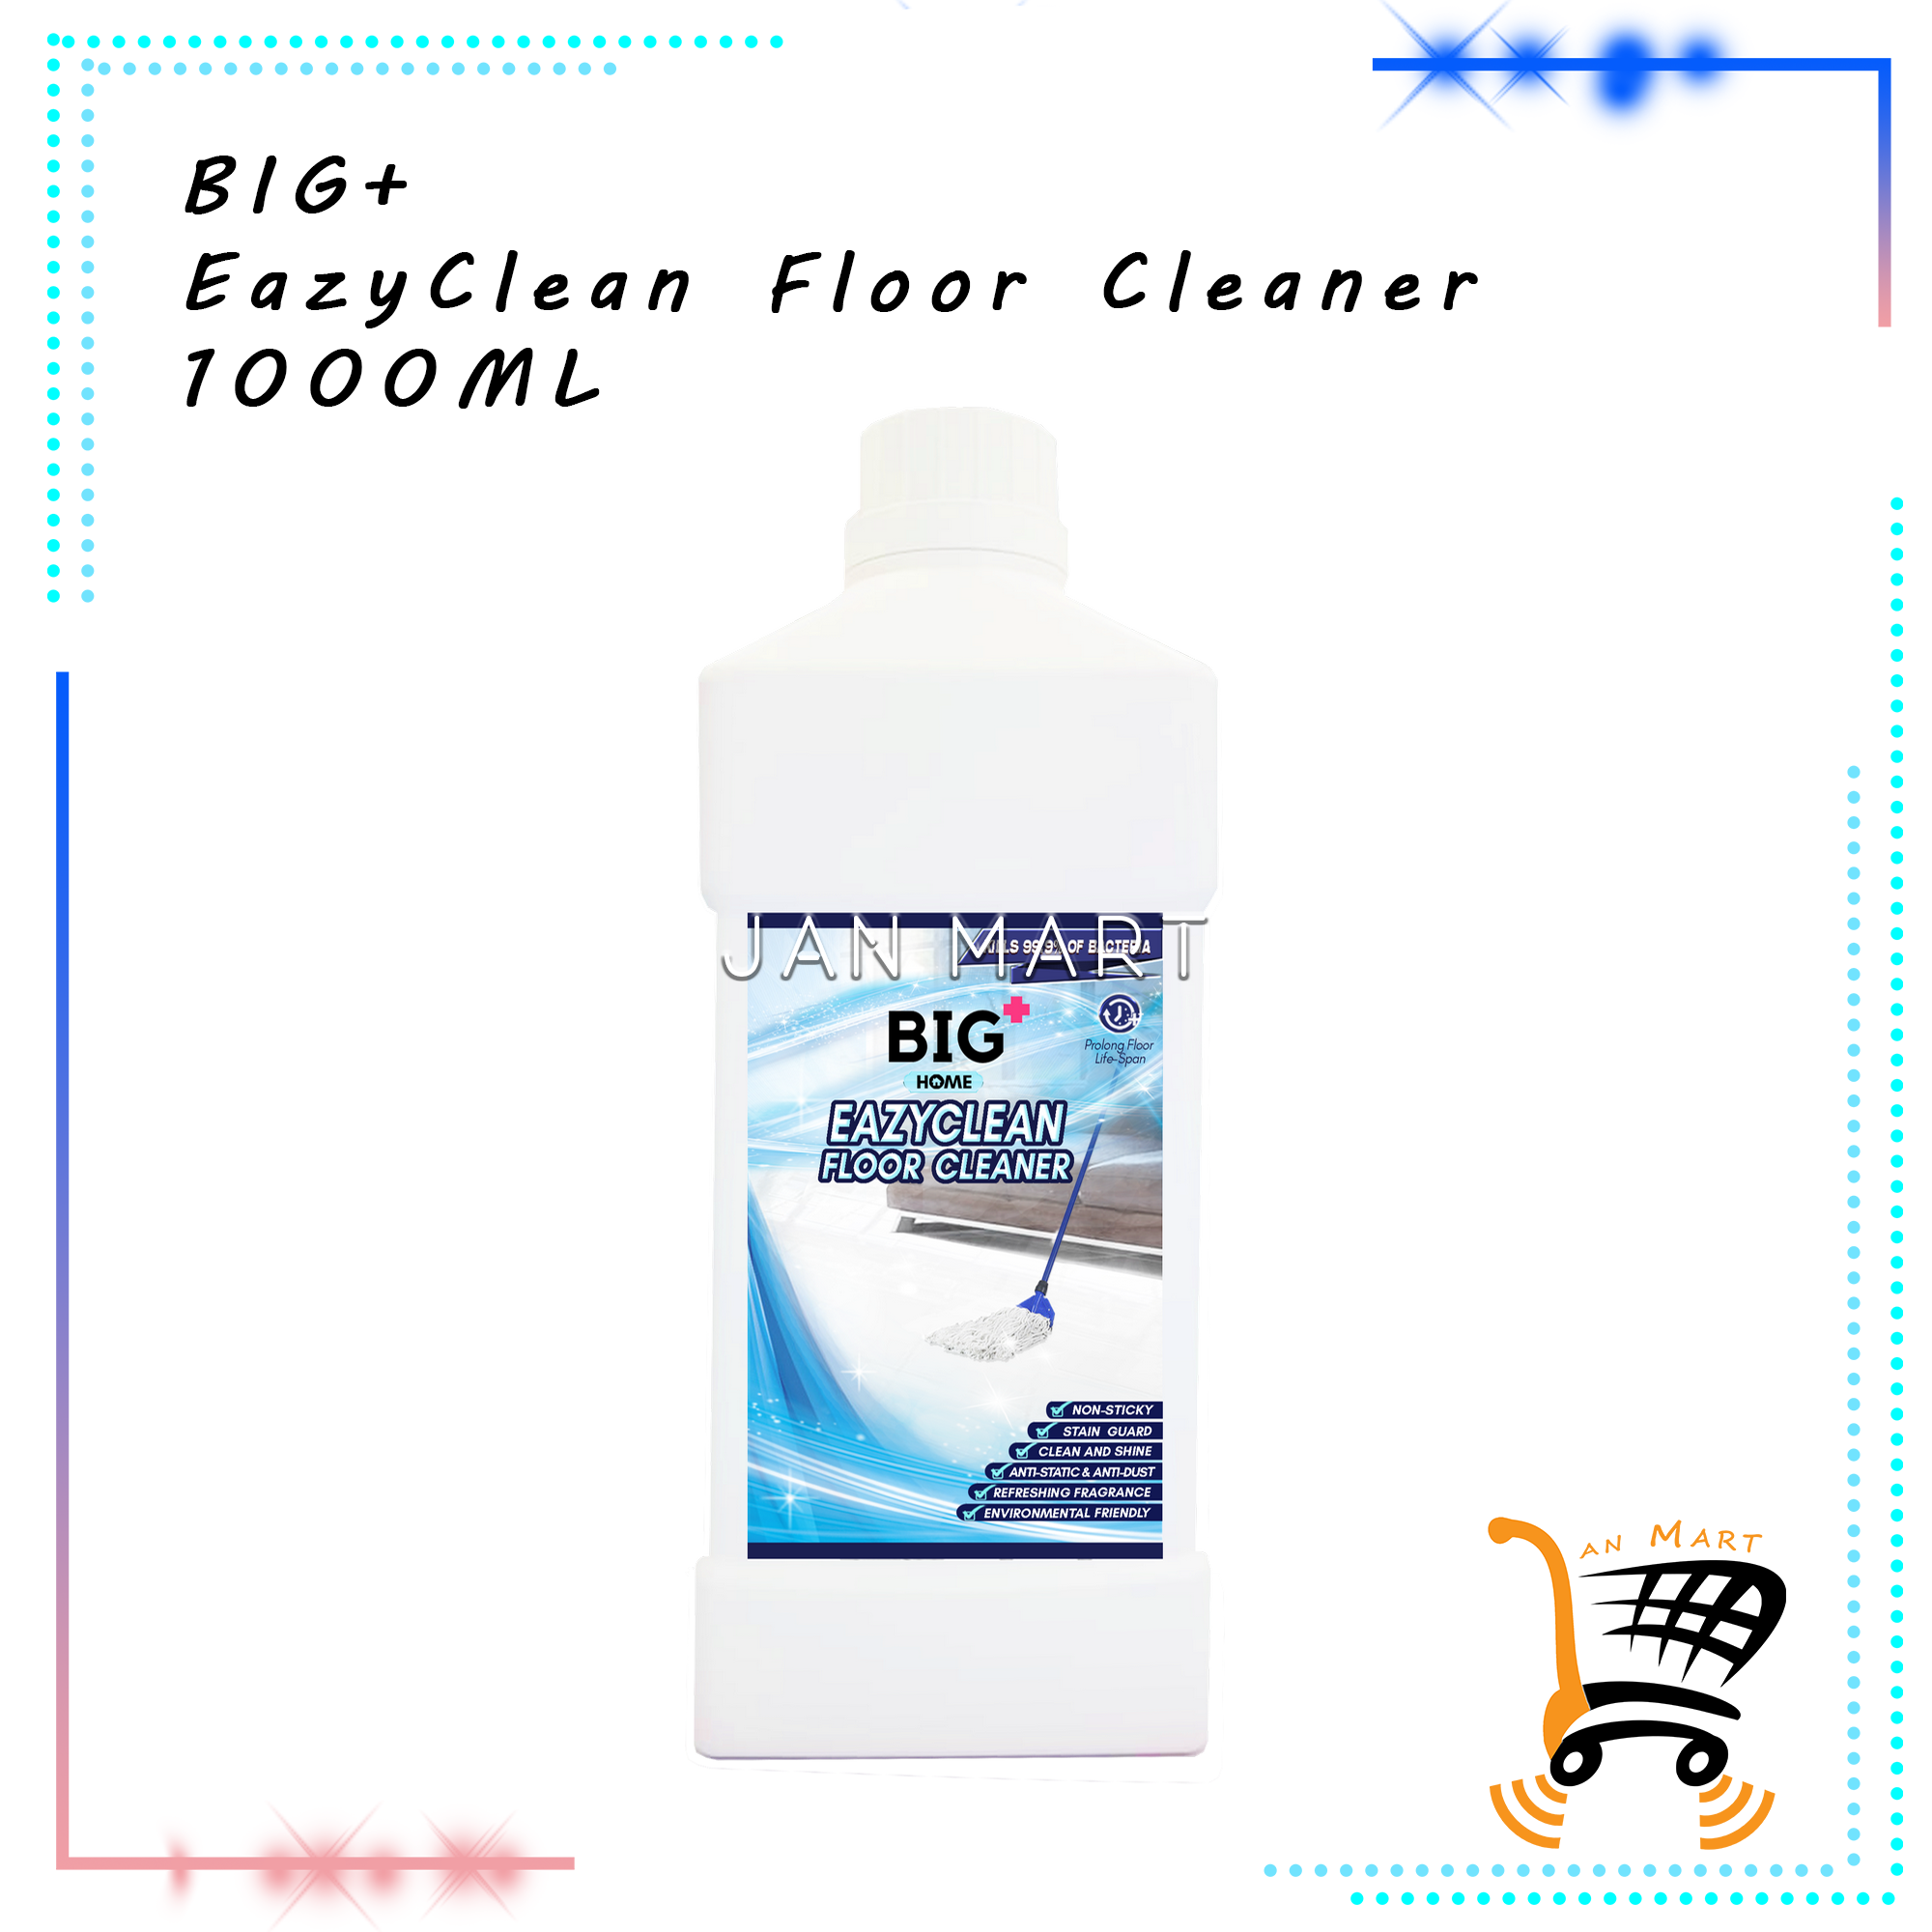 BIG+ EazyClean Floor Cleaner 1000ML